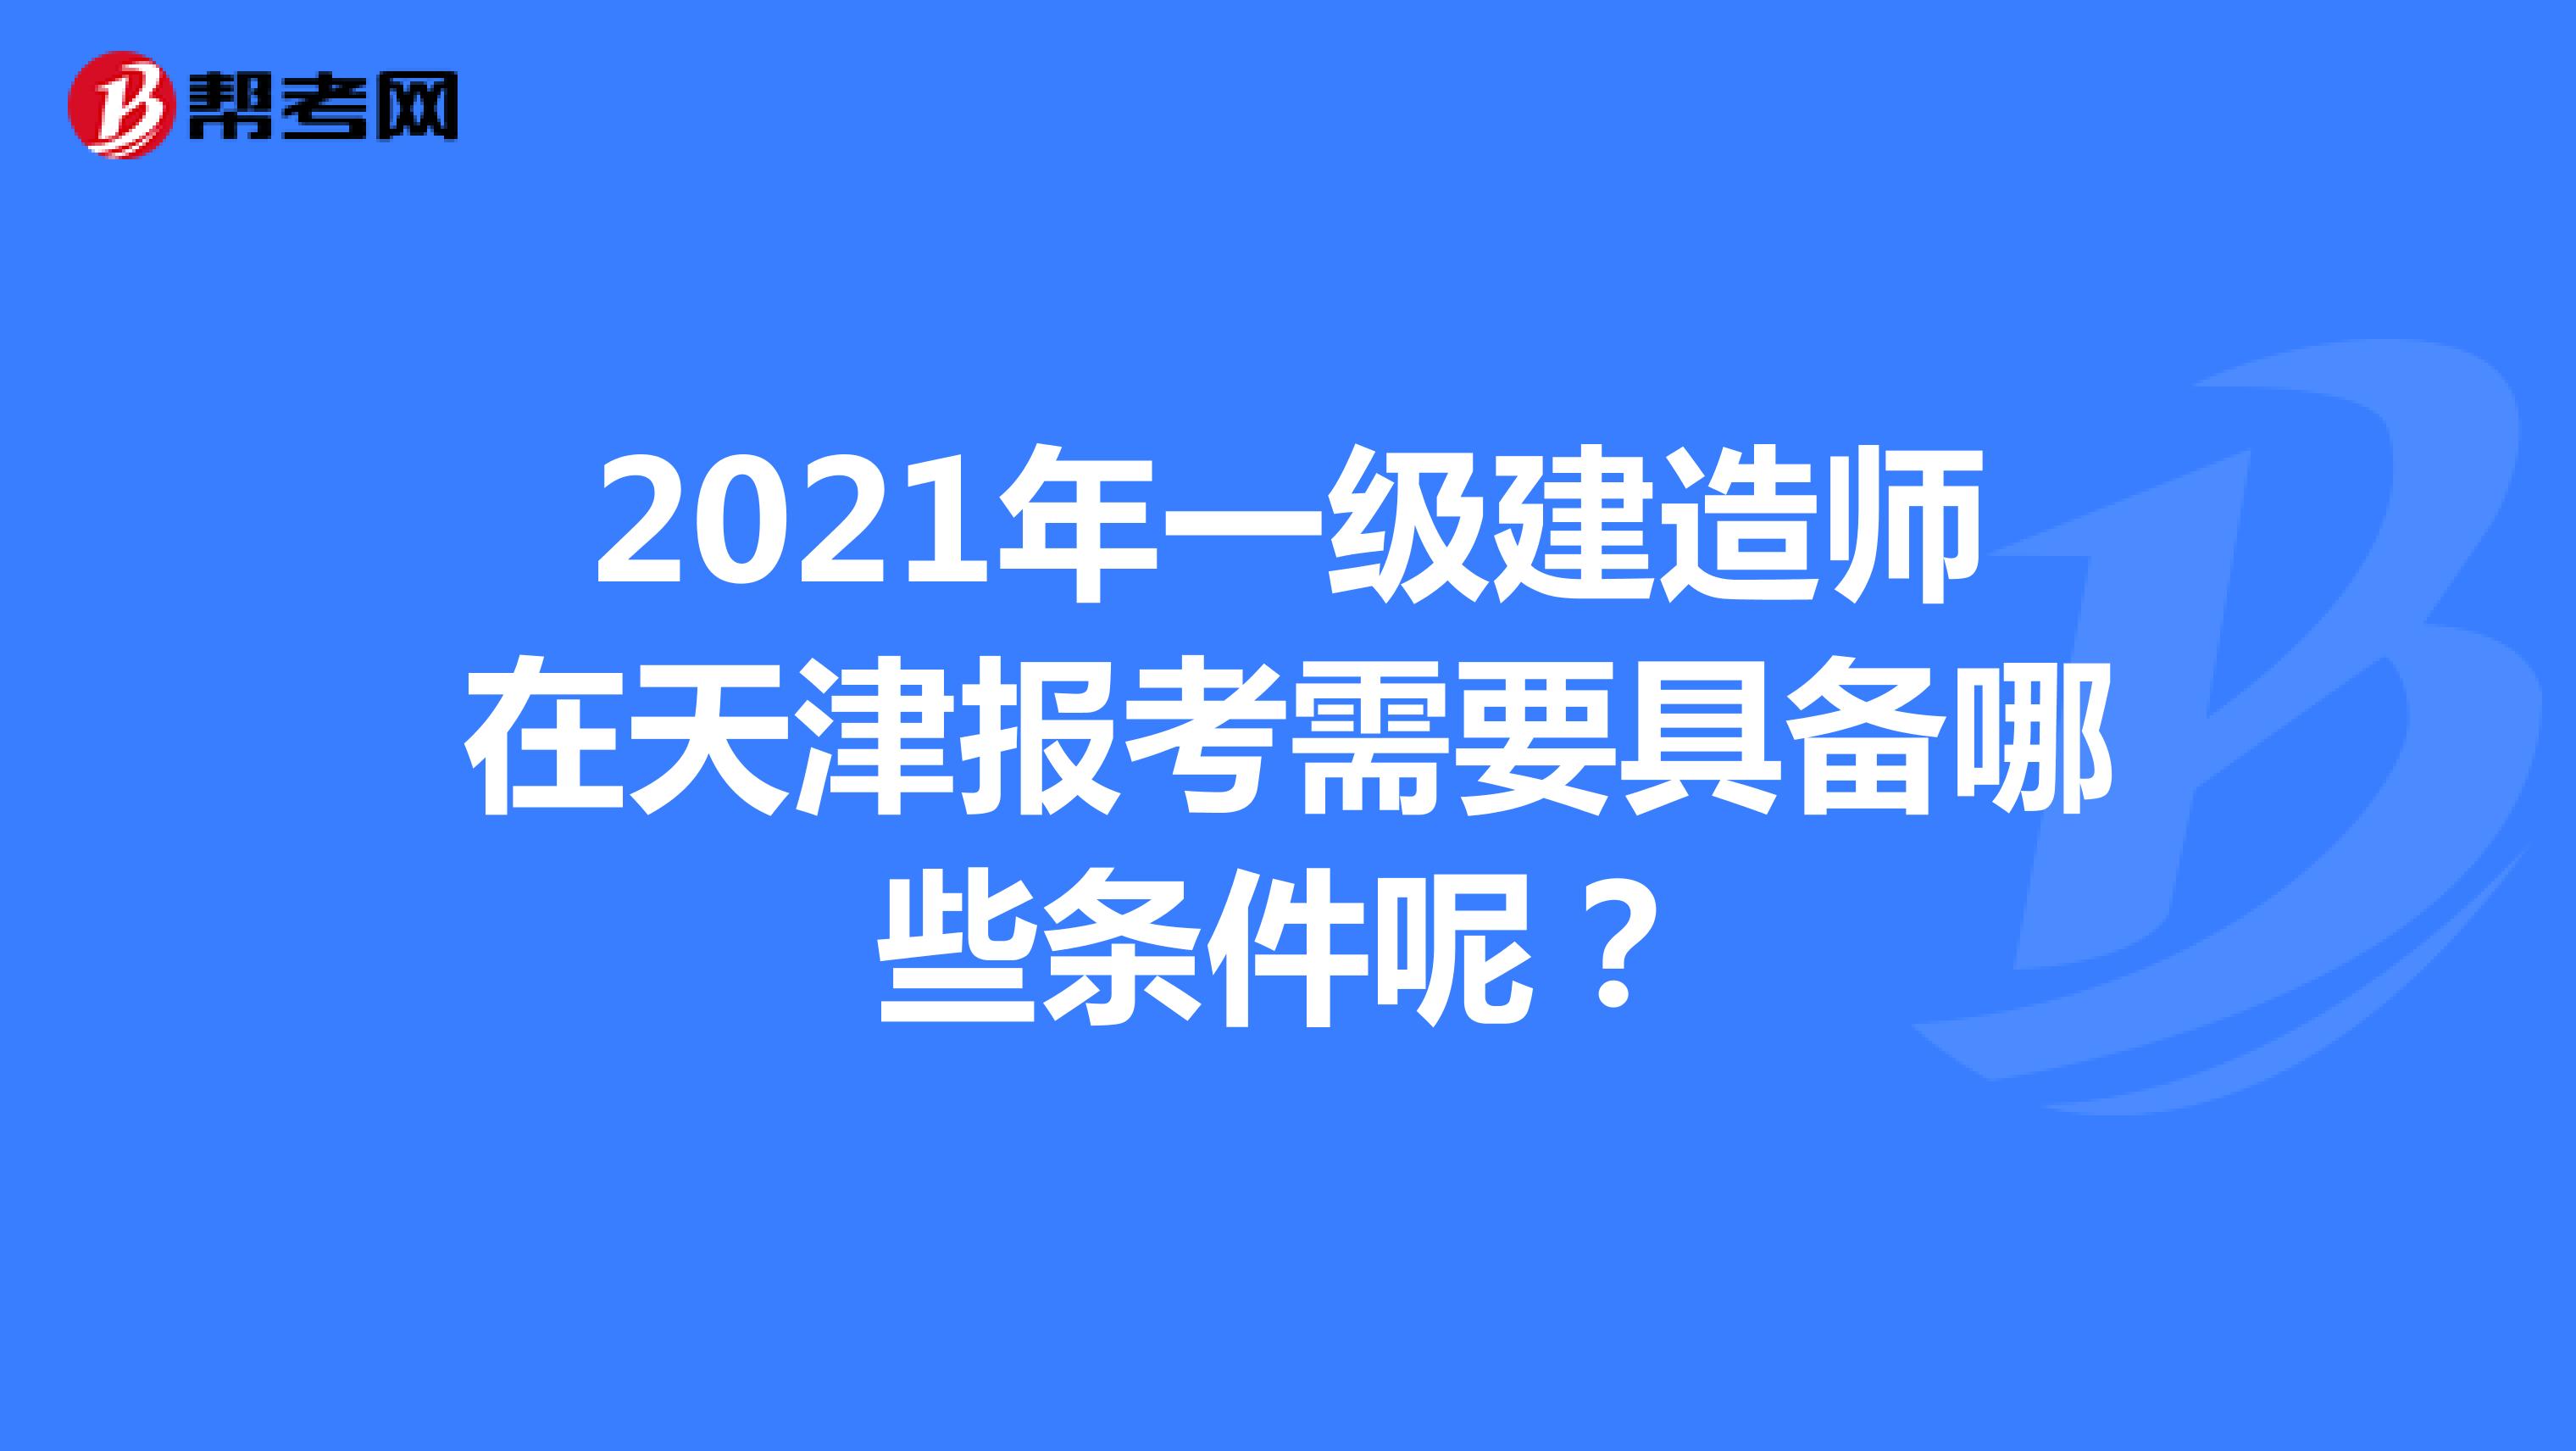 2021年一级建造师在天津报考需要具备哪些条件呢？